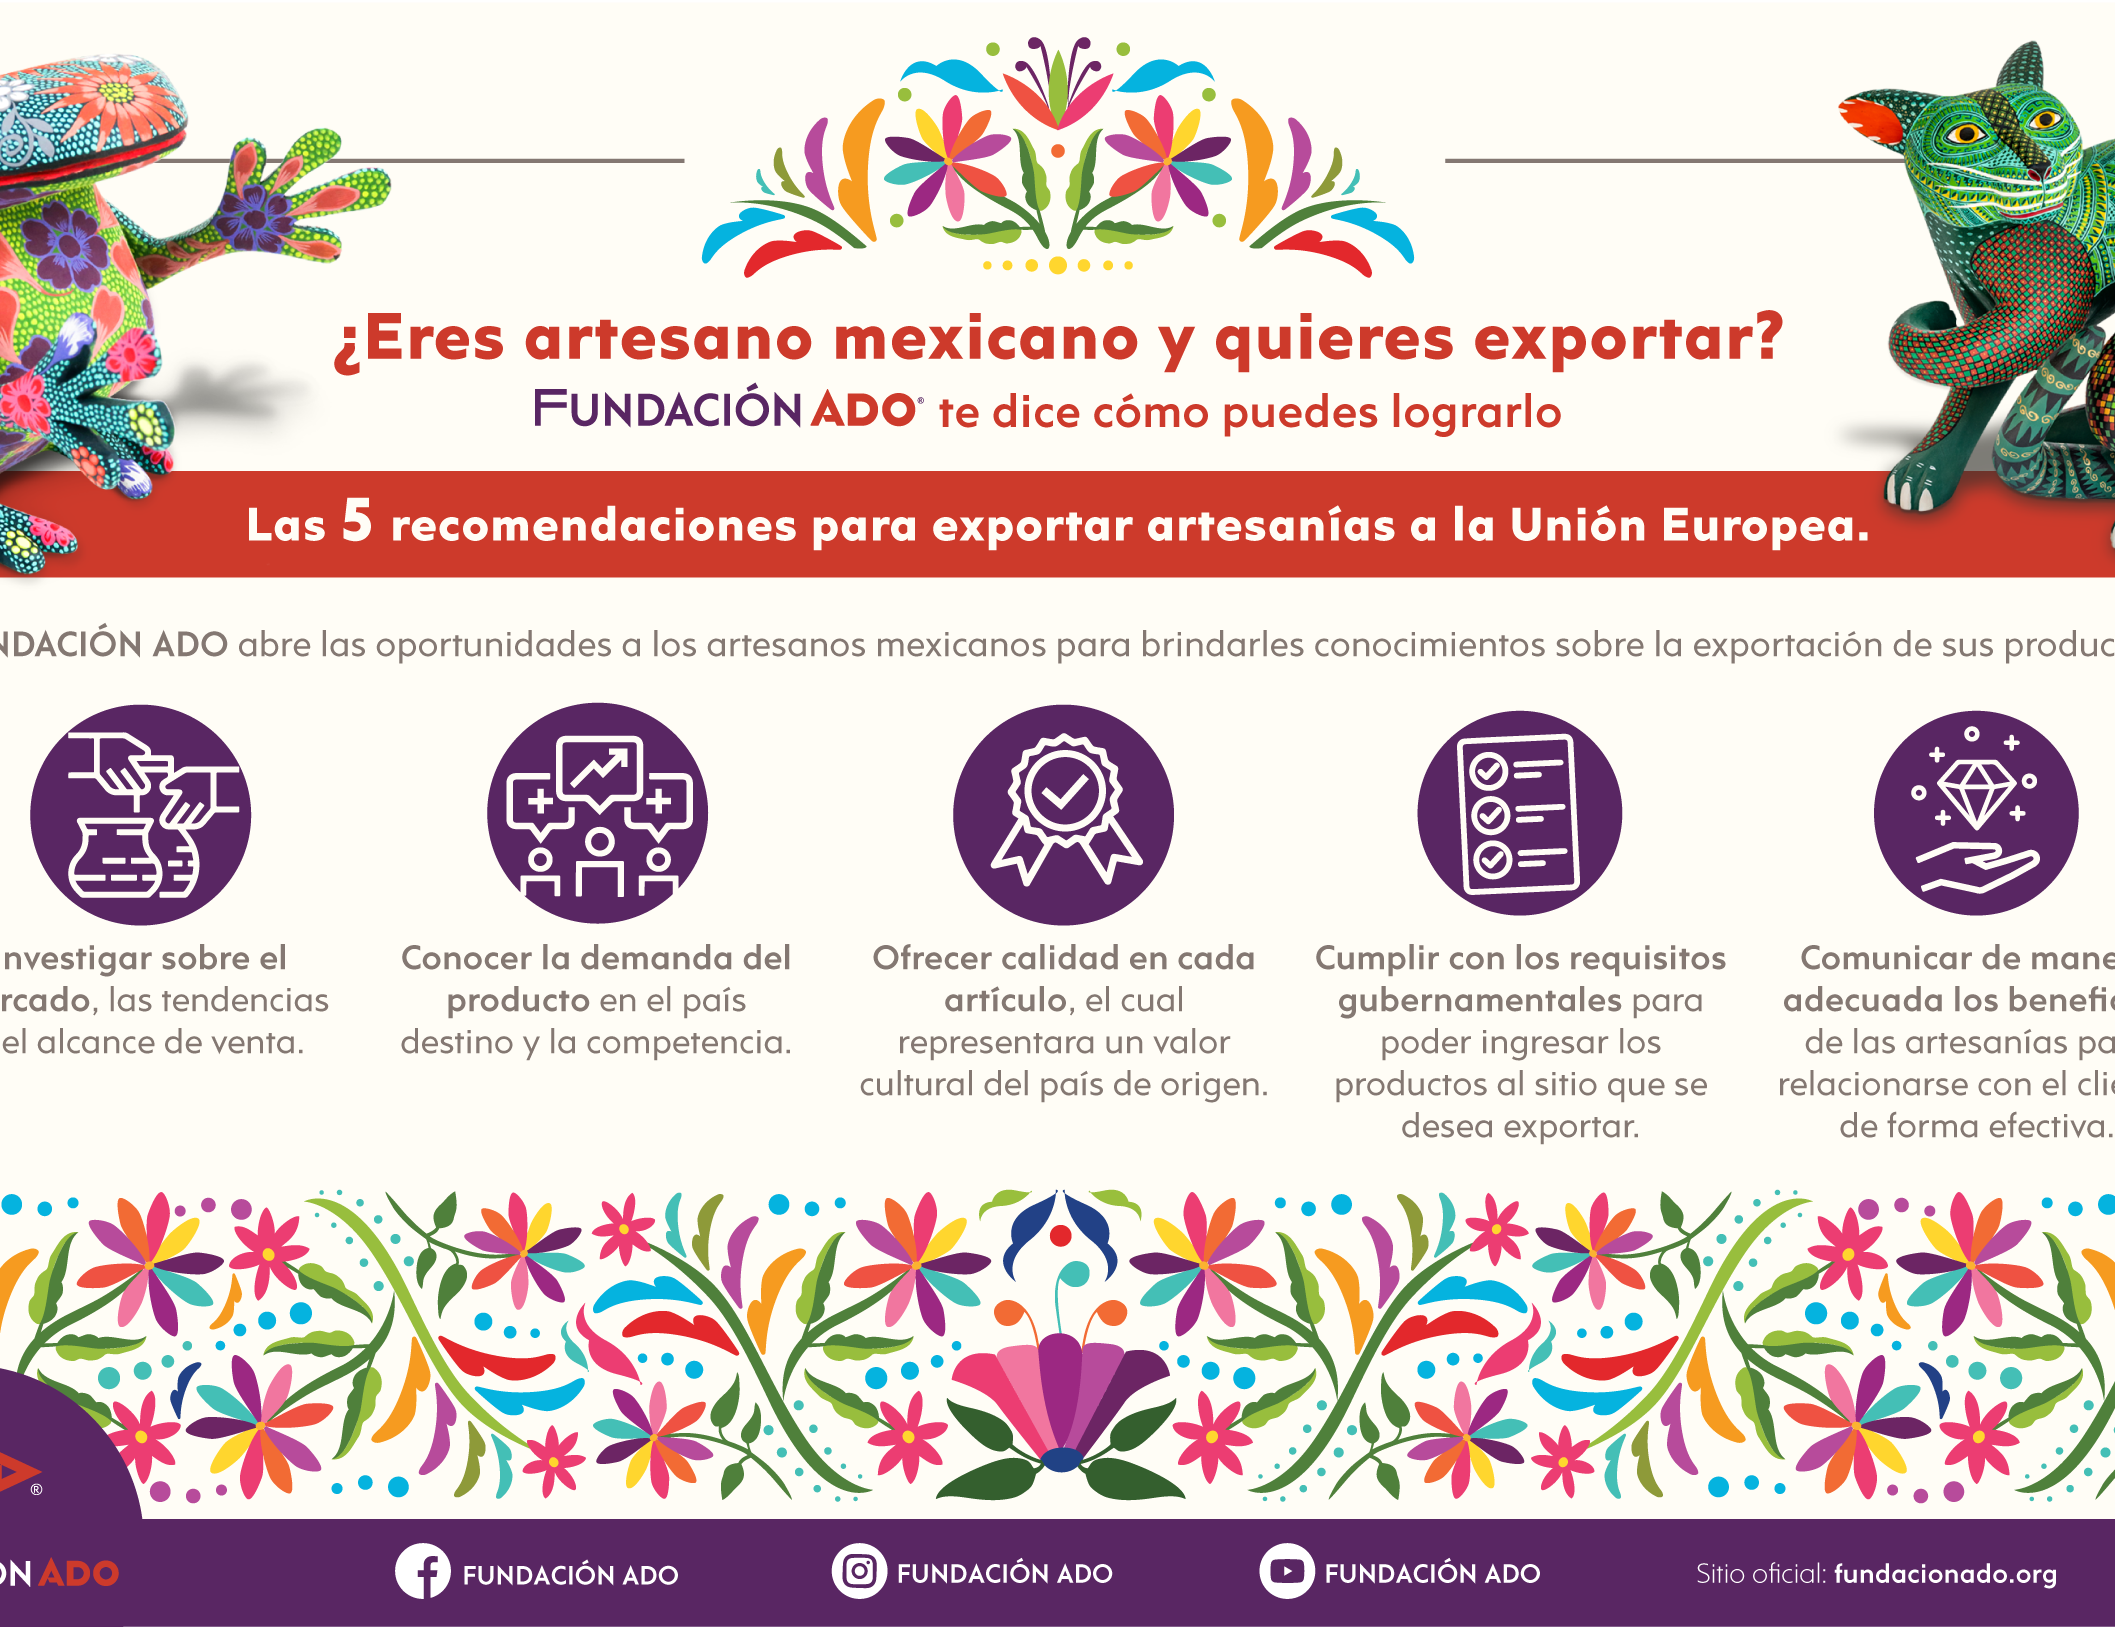 “Expandir el comercio justo es una oportunidad para los artesanos mexicanos”: FUNDACIÓN ADO 